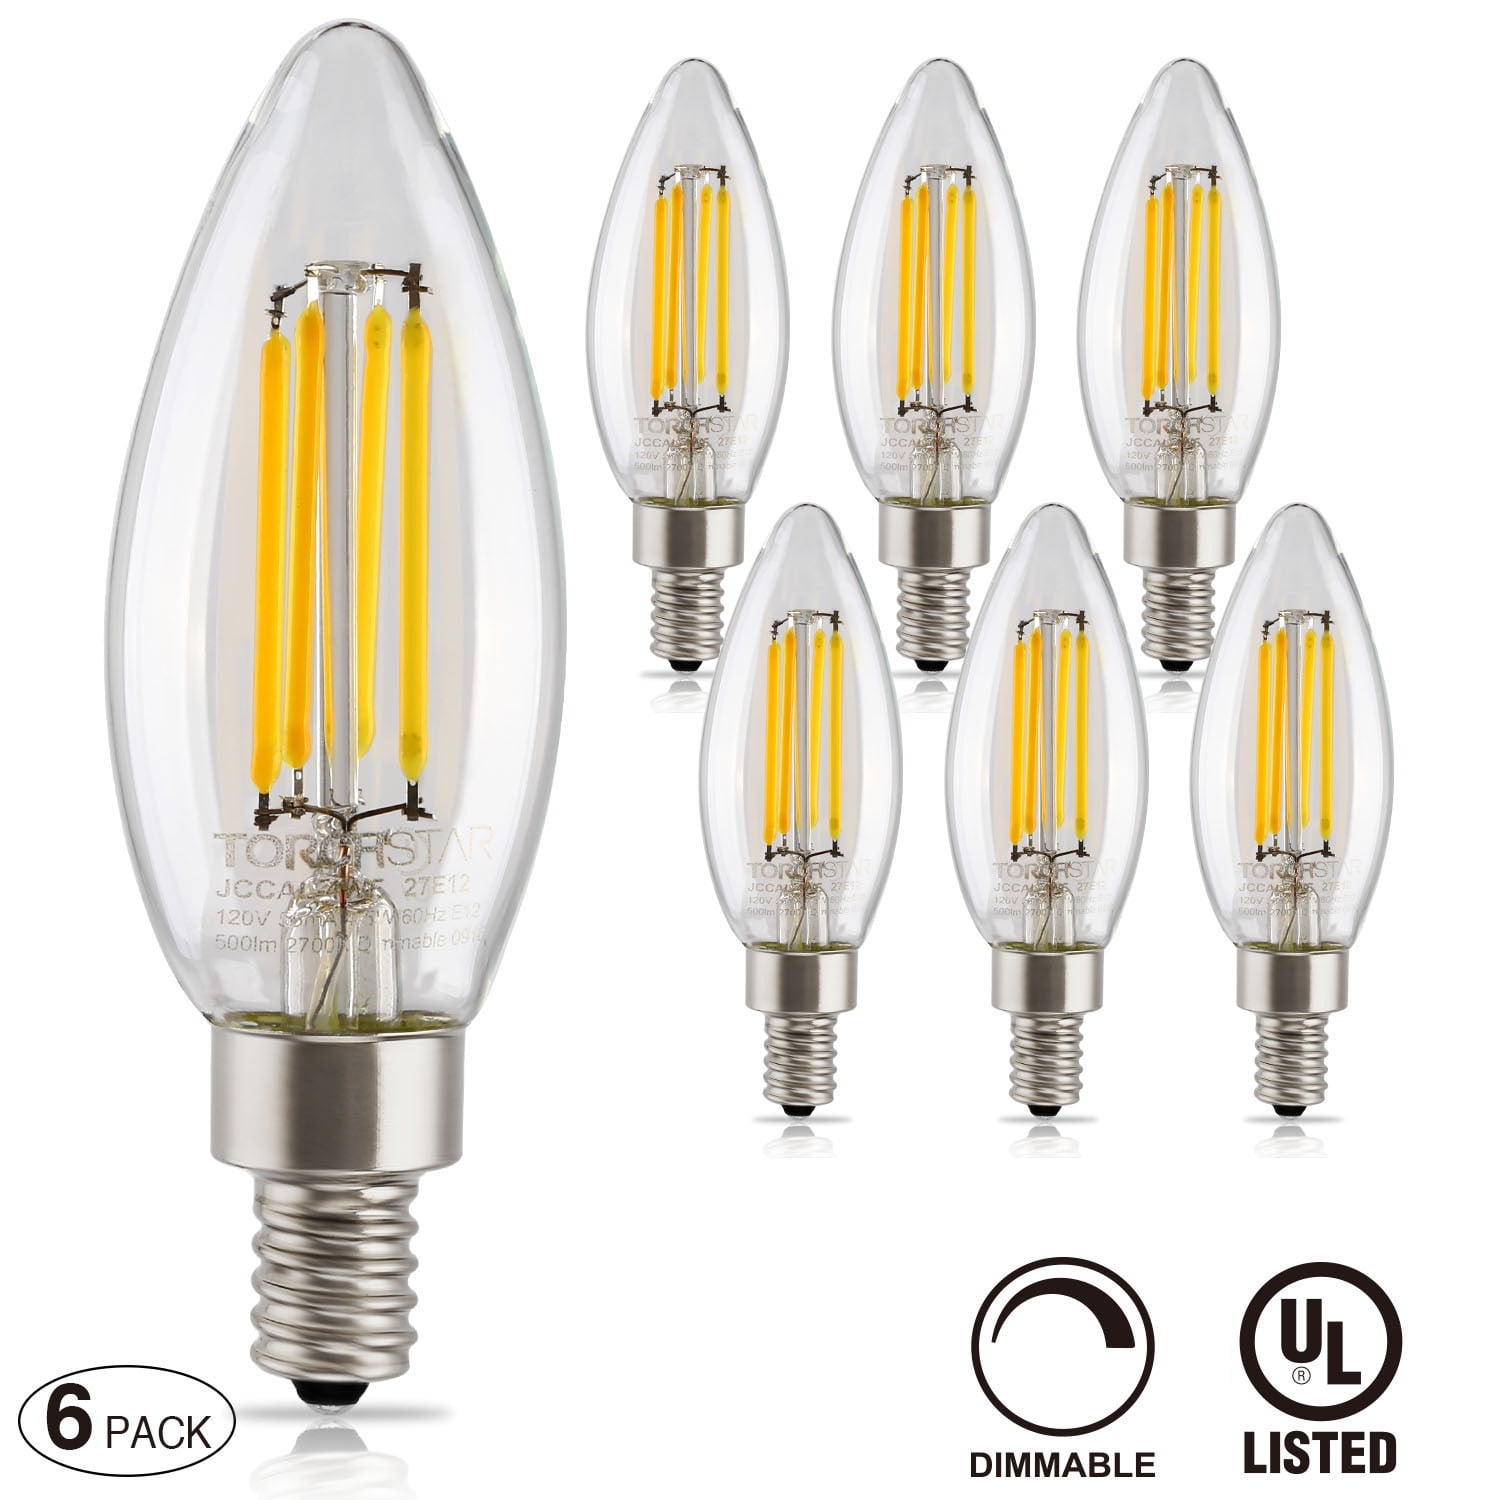 LED Candelabra Light Bulbs-4W-E12-120V-2700K-Dimmable-Torpedo-Clear-FS Lot/5 